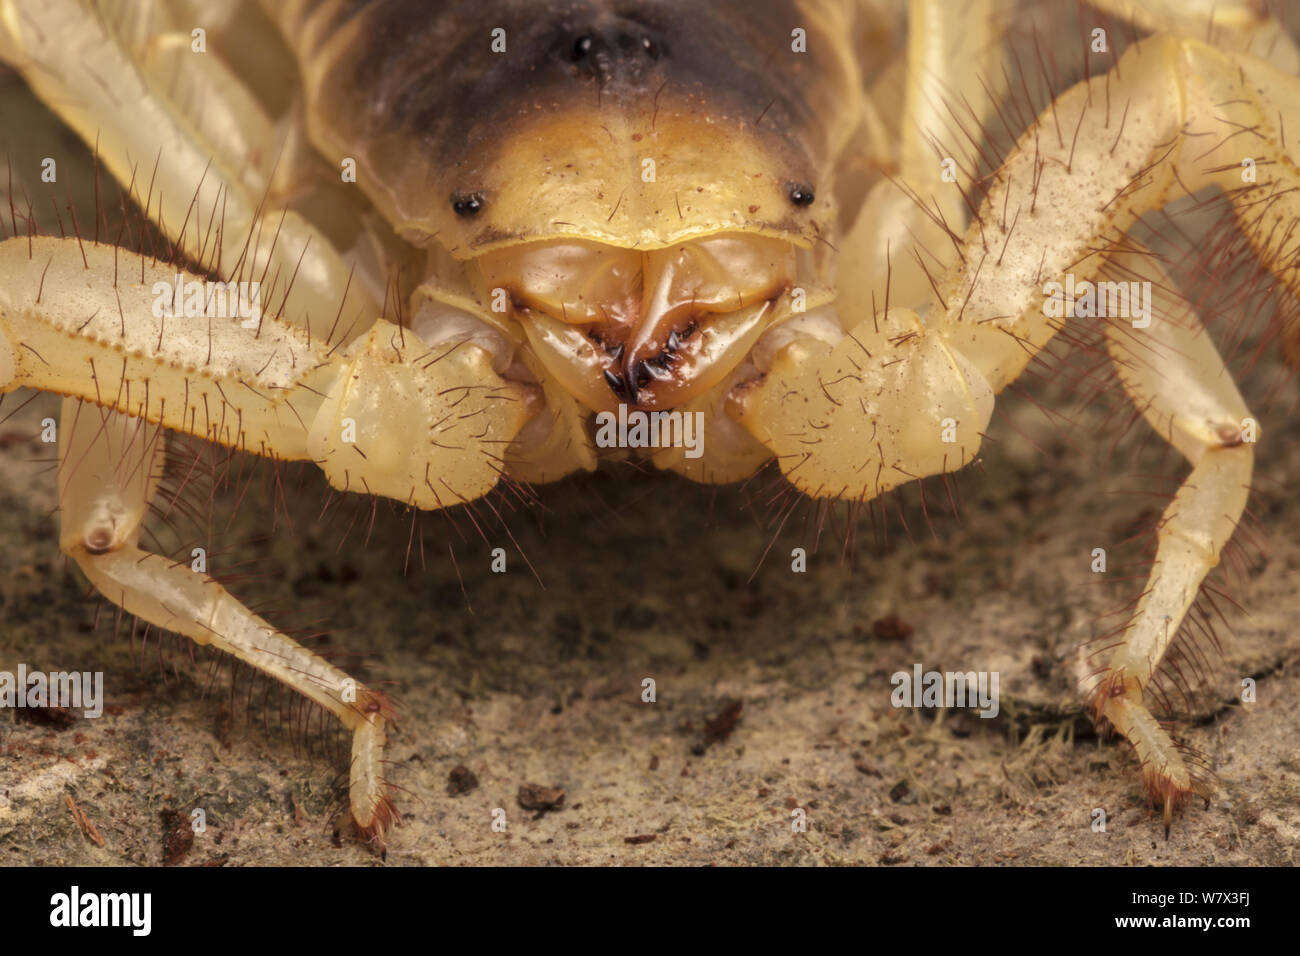 Desert Hairy Scorpion (Hadrurus arizonensis). Captive, originating from North America. Stock Photo